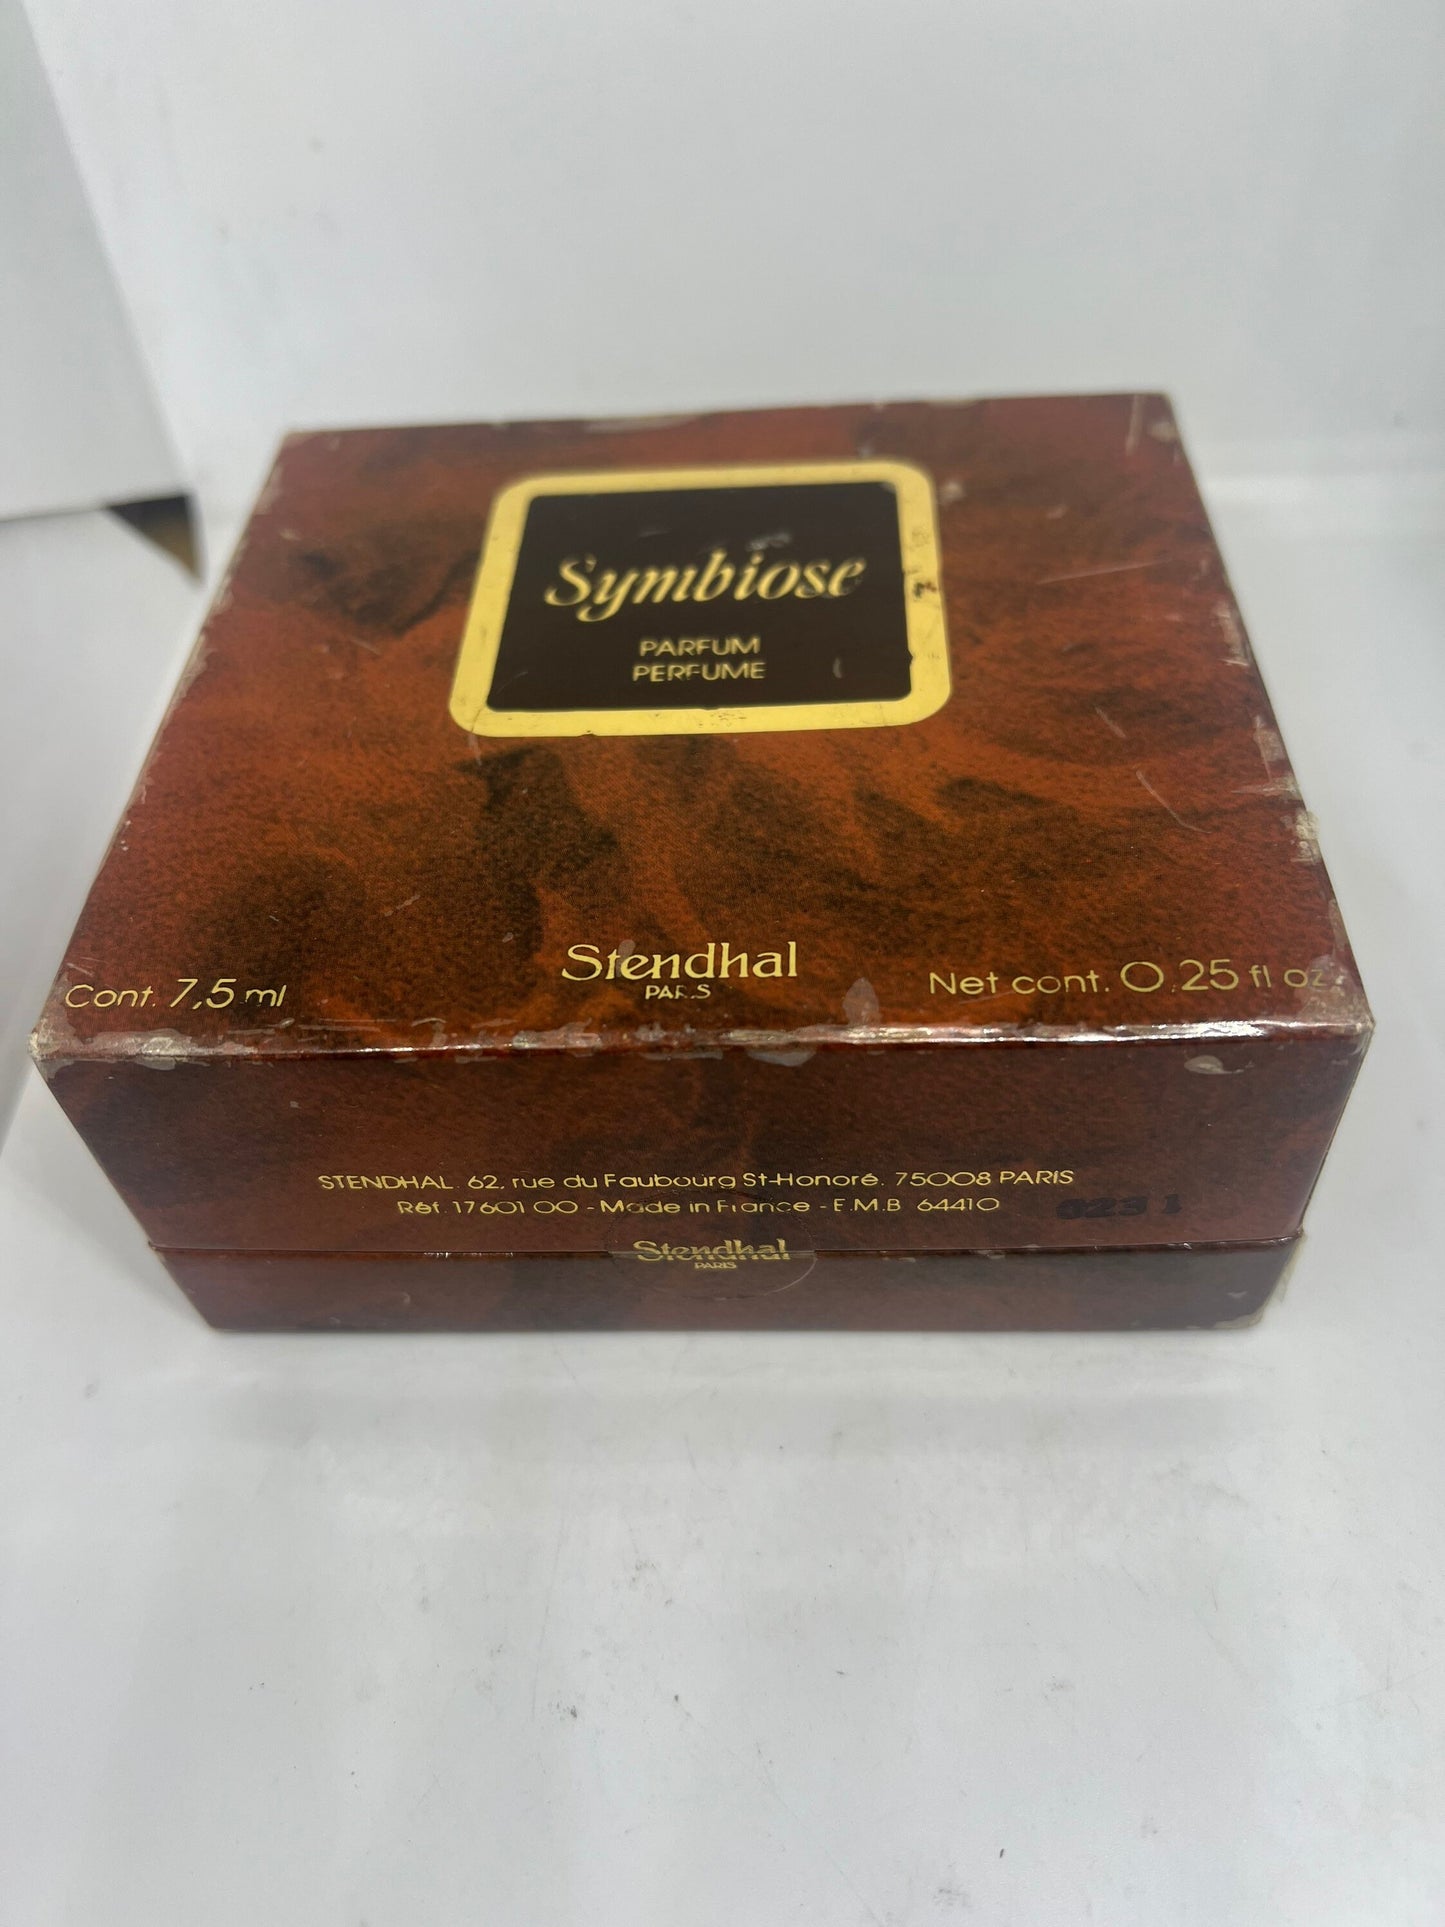 Symbioses Stendhal Parfum 7.5ml 0.25oz